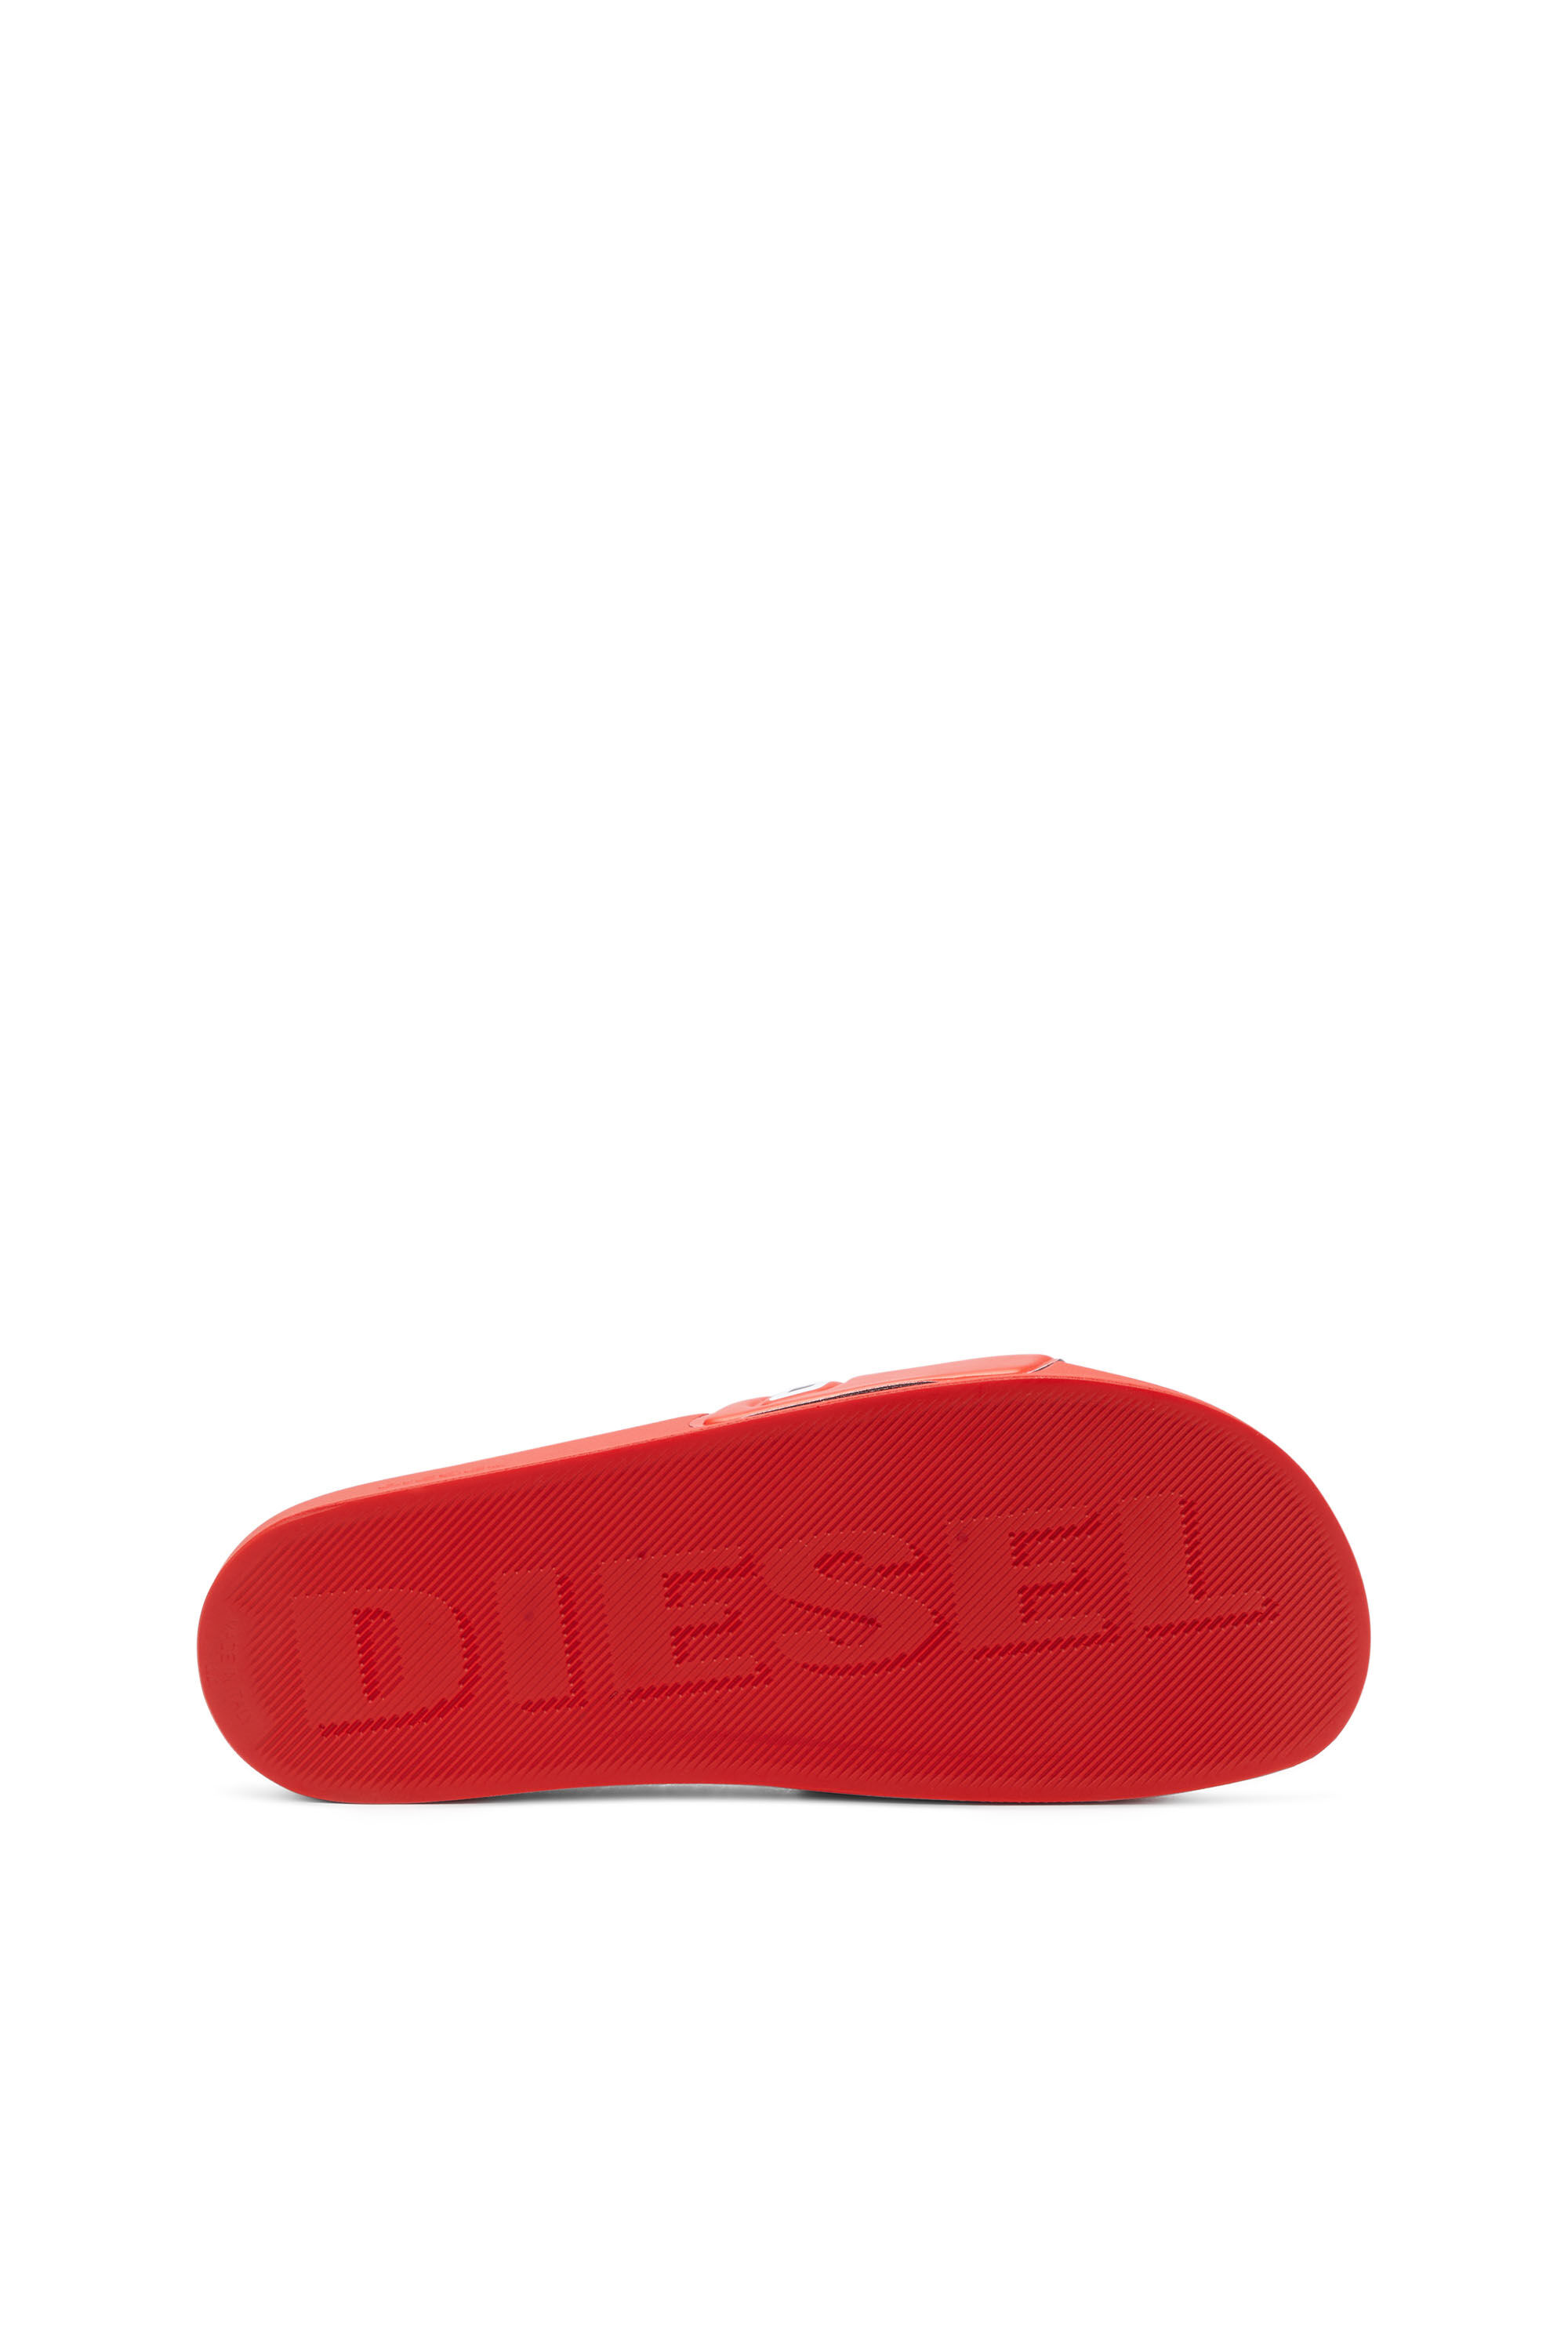 Diesel - SA-MAYEMI D, Homme Sa-Mayemi-Claquettes de piscine avec logo D intégré in Polychrome - Image 5